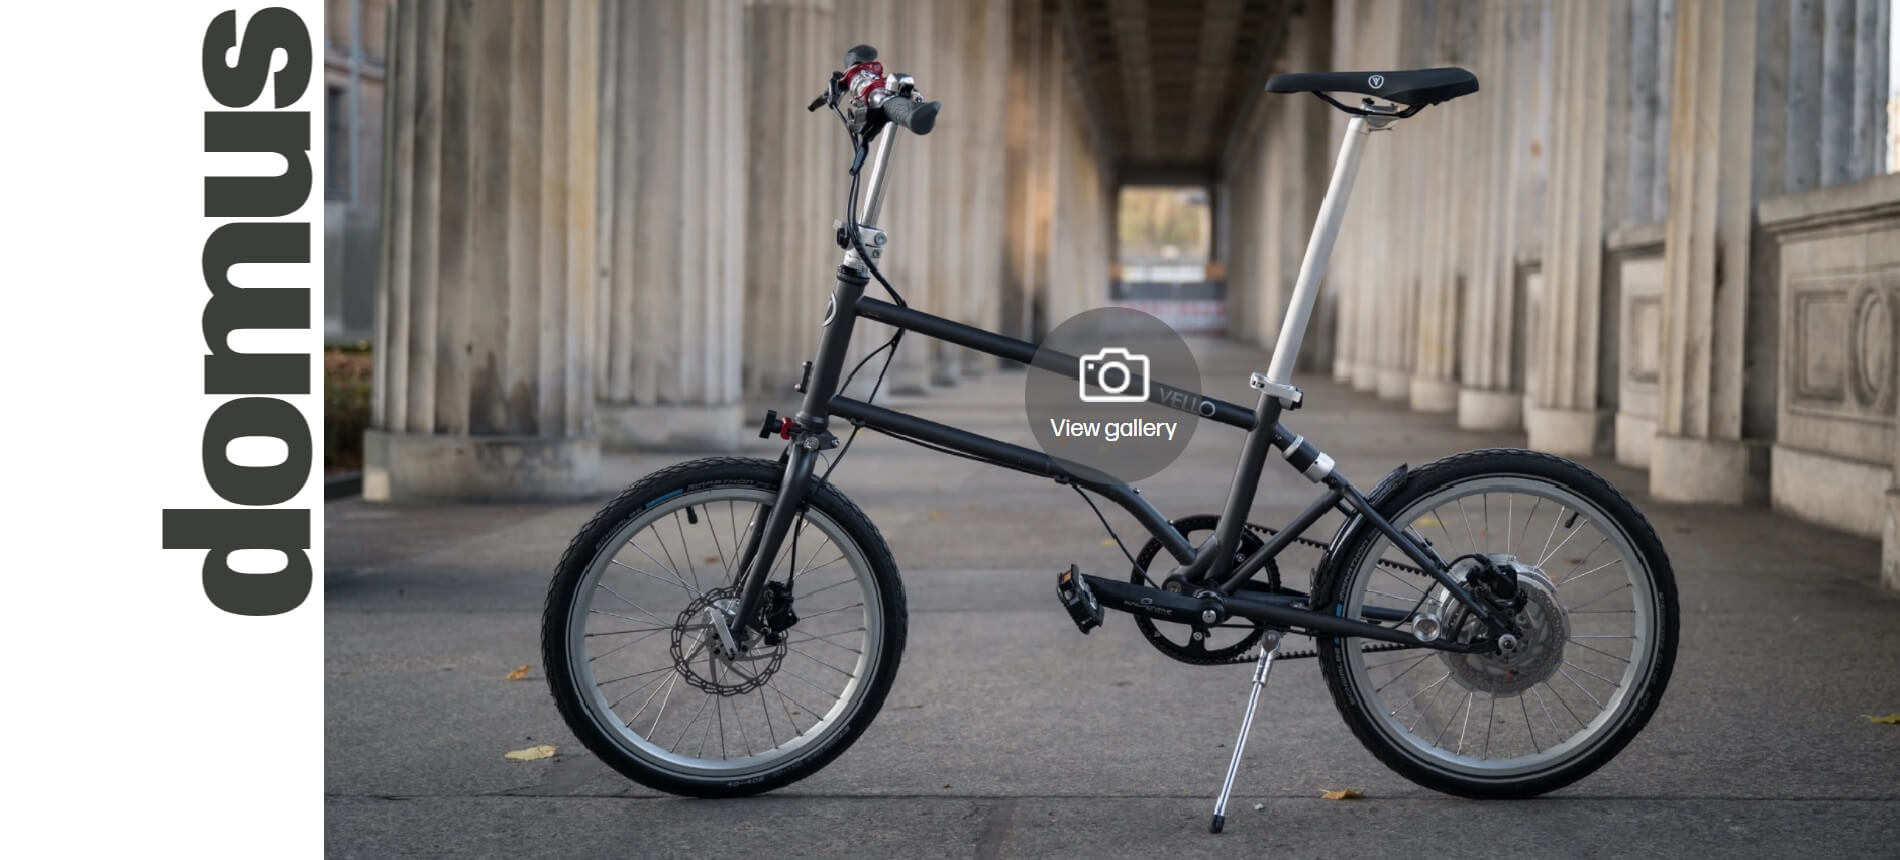 VELLO Bike+ featured in the DOMUS design magazine